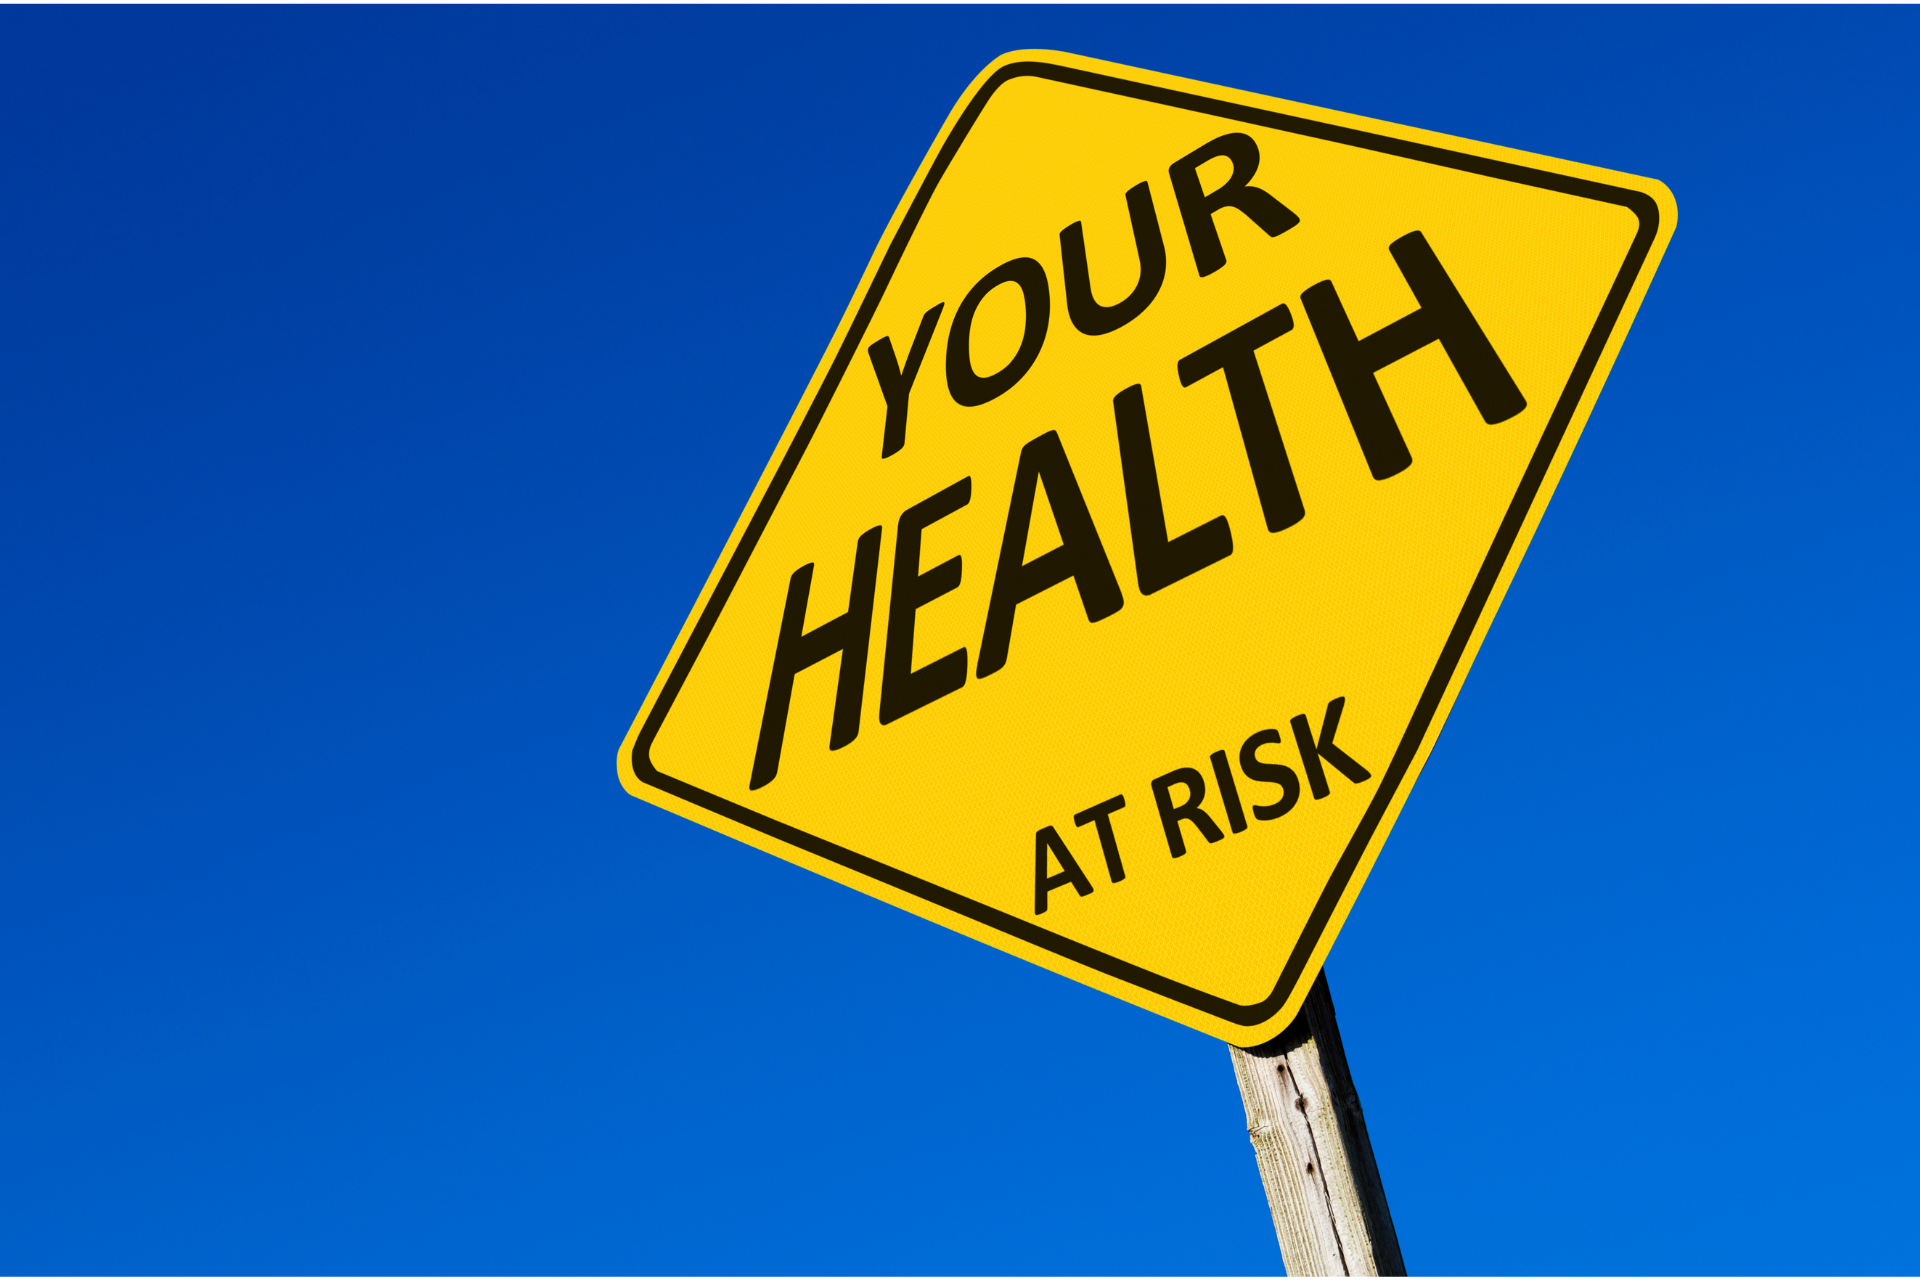 Earache health risks